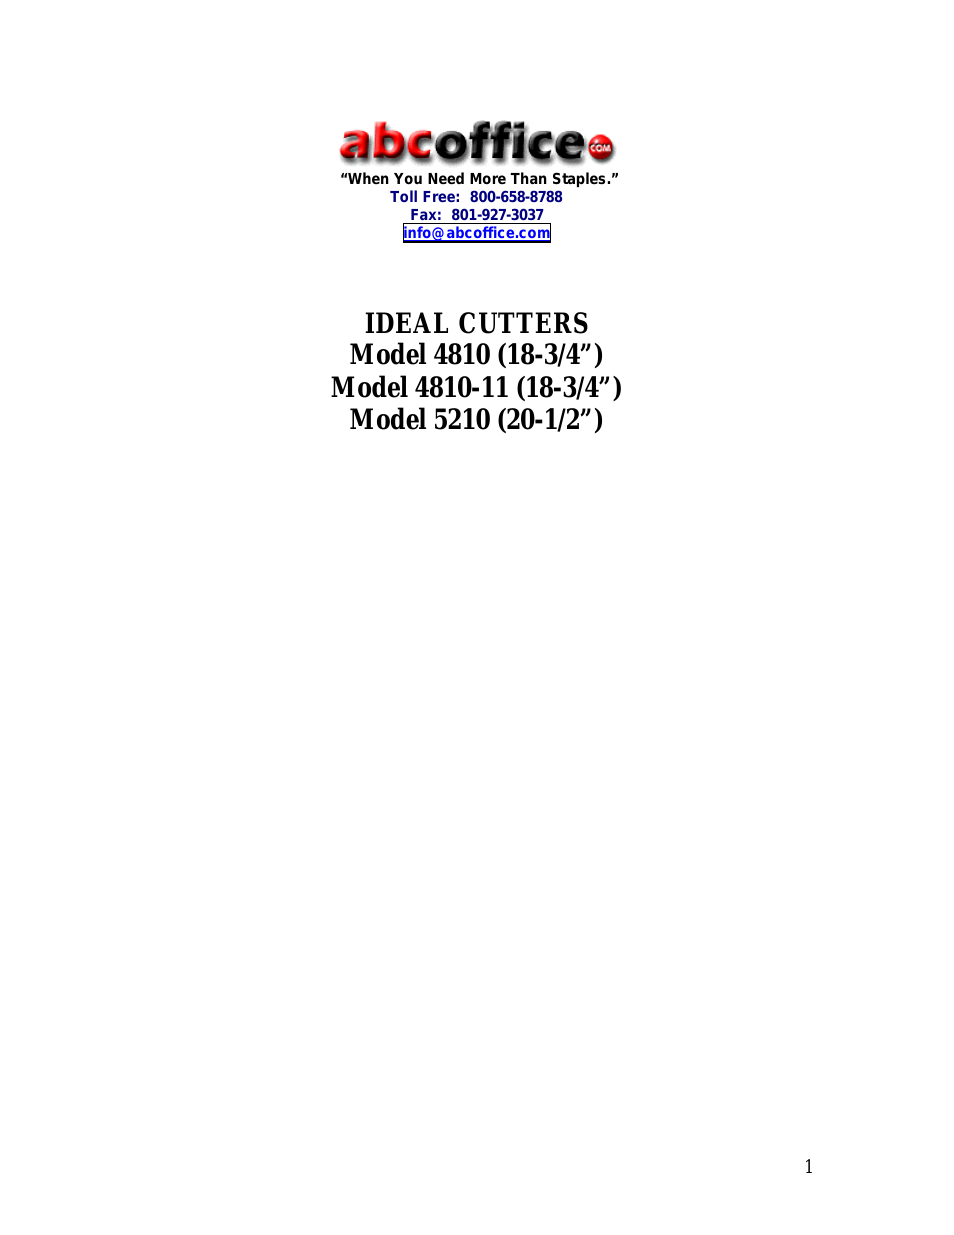 Ideal Cutter 4810-11